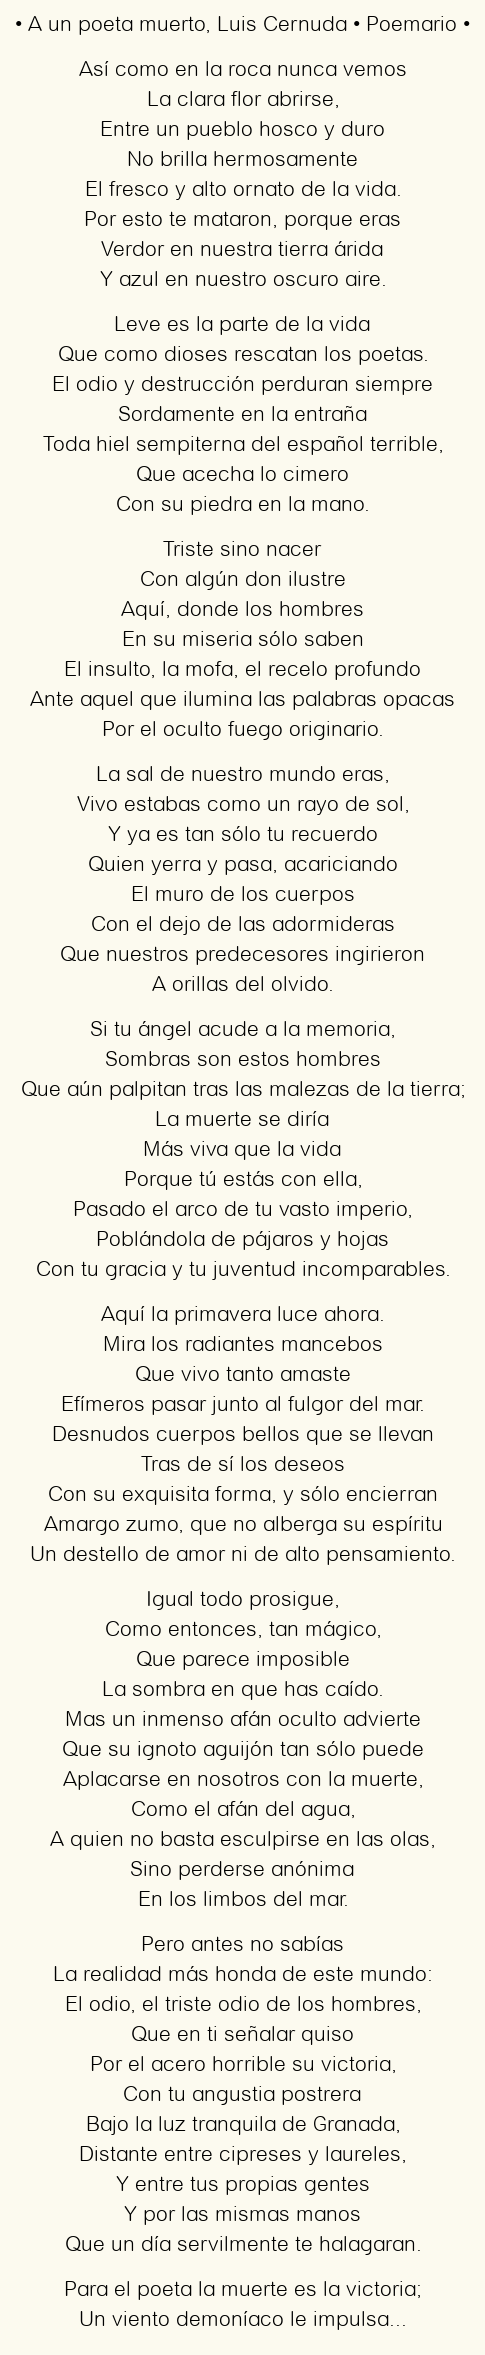 Imagen con el poema A un poeta muerto, por Luis Cernuda